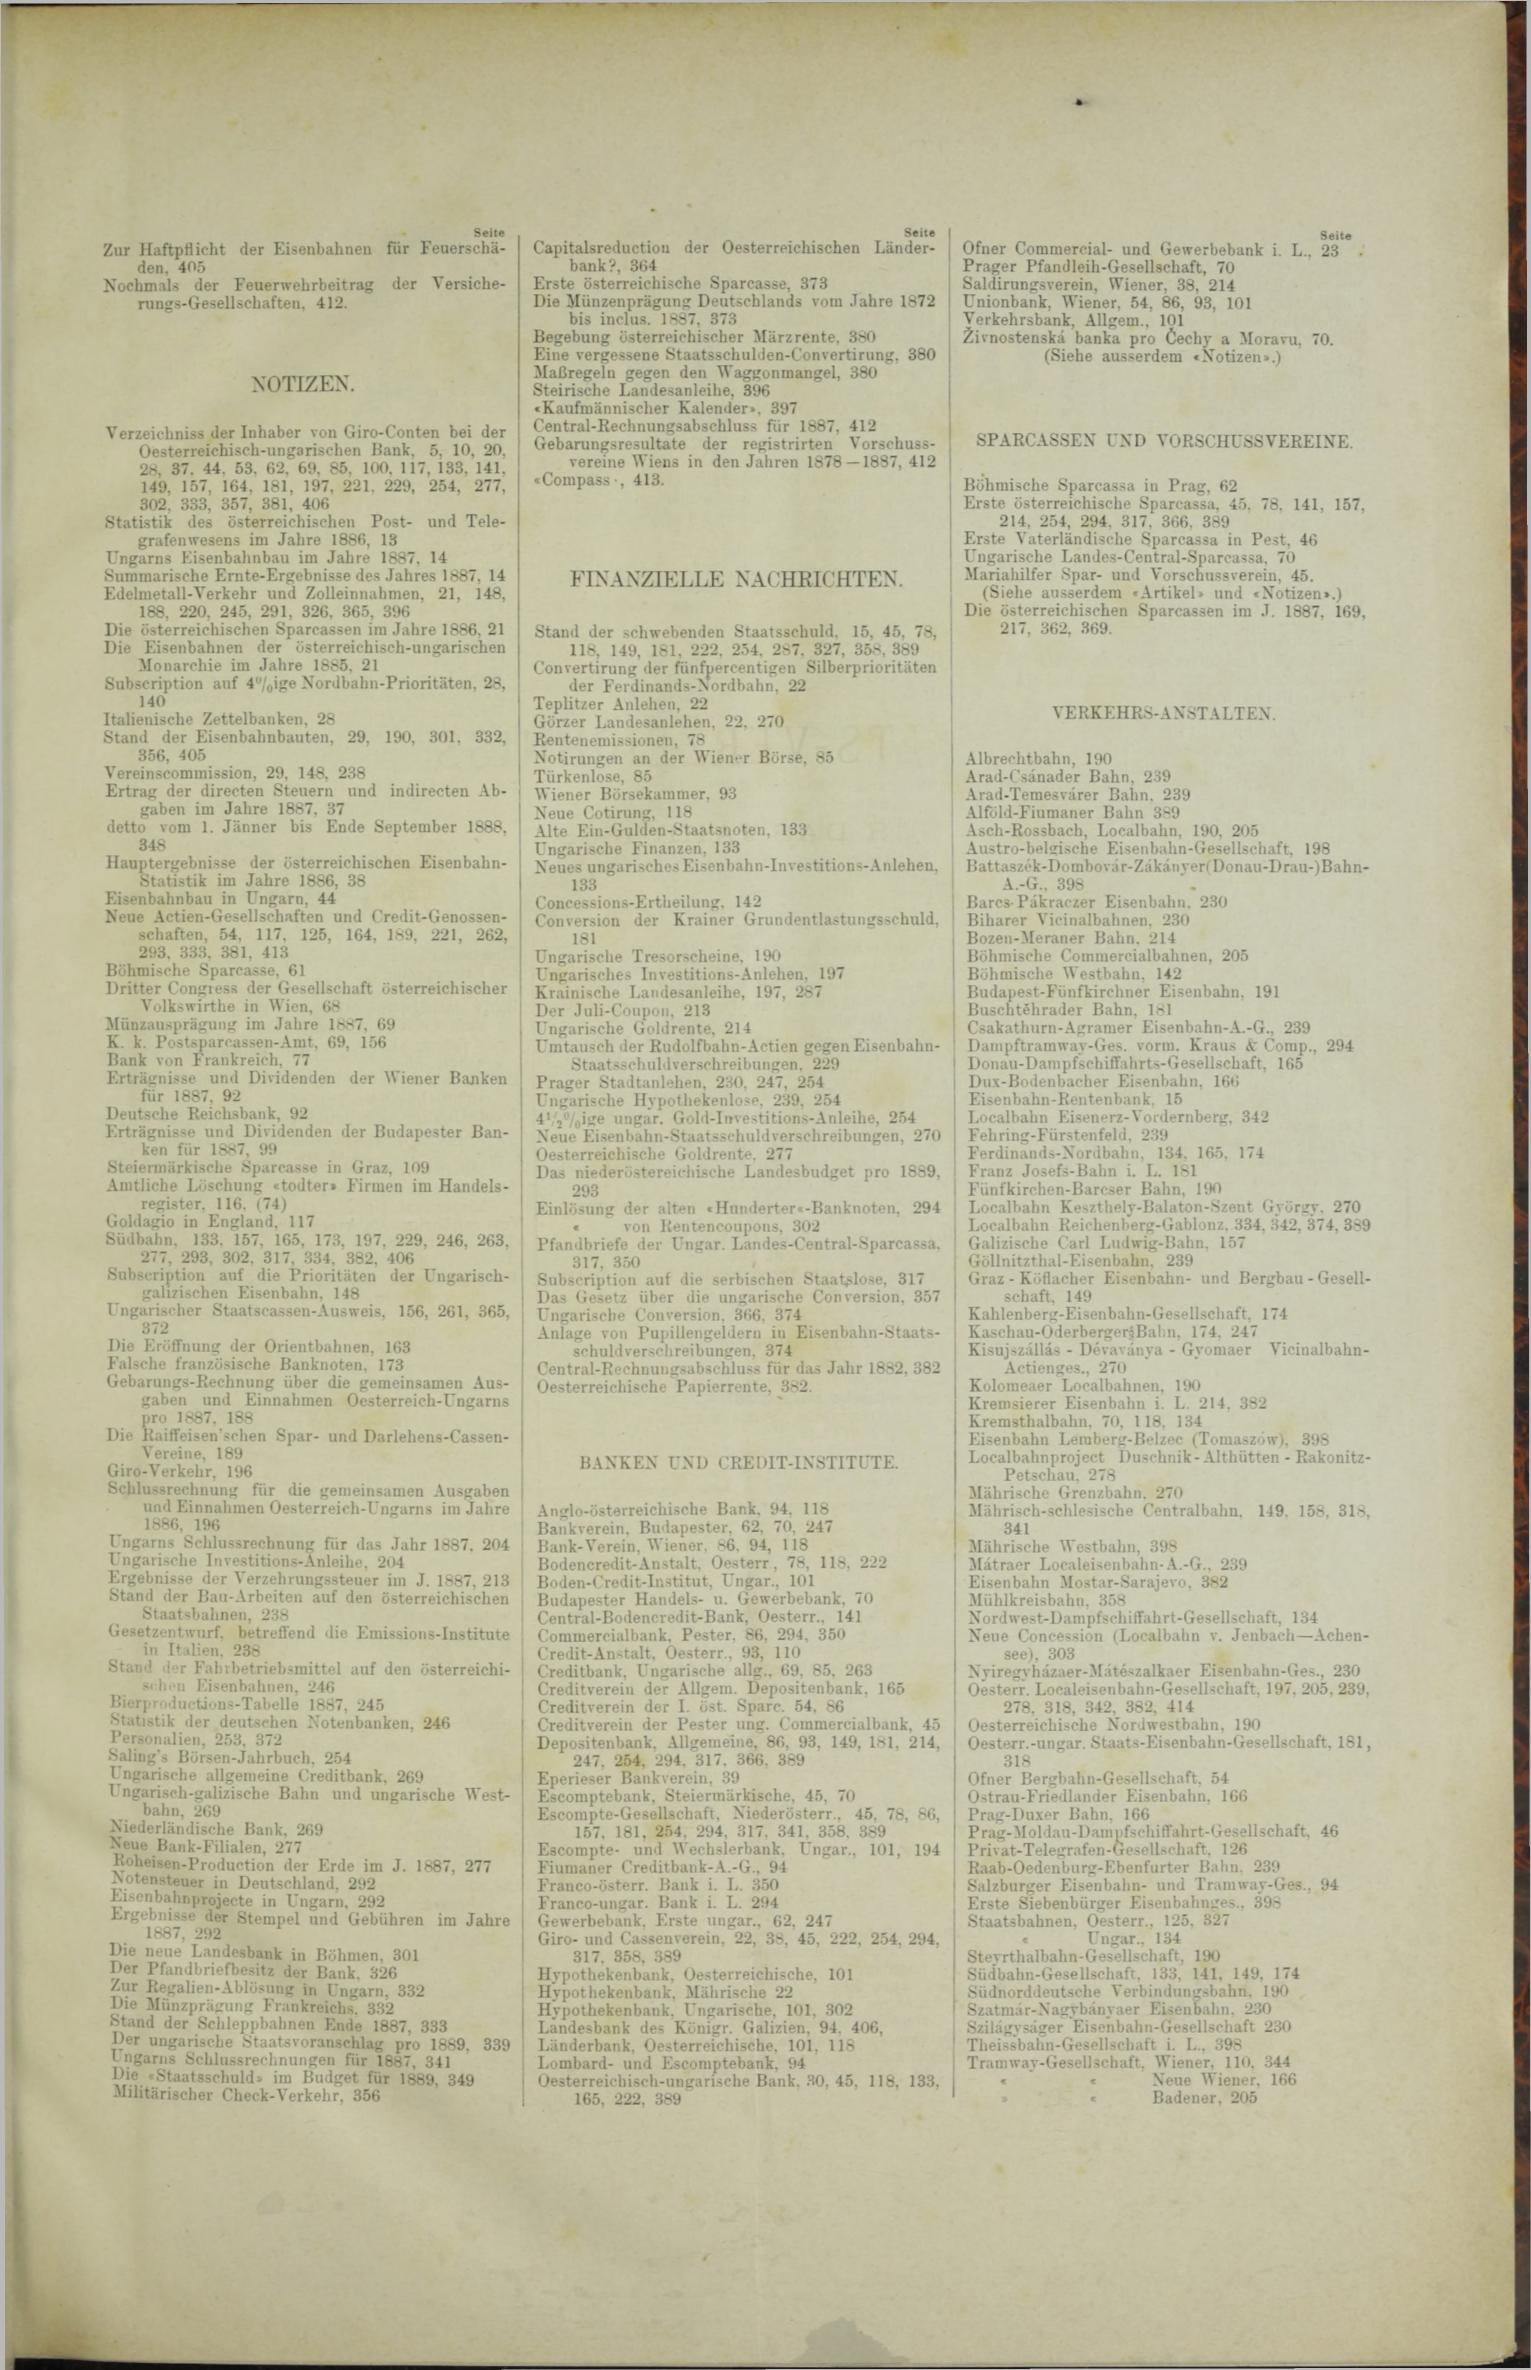 Der Tresor 10.05.1888 - Seite 11